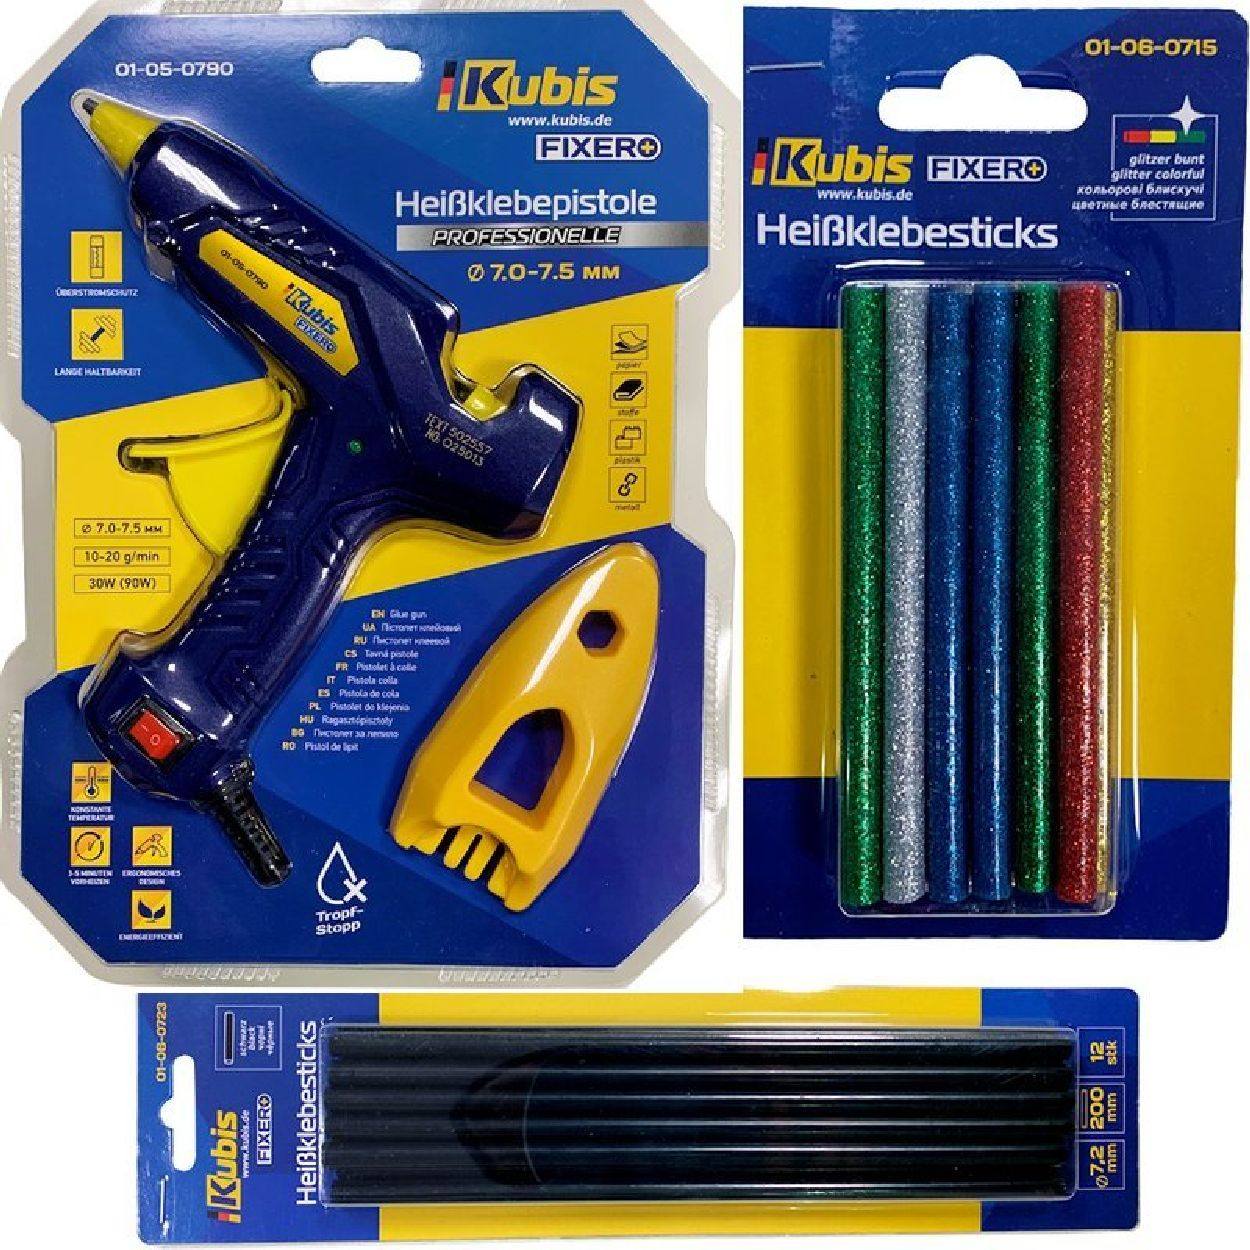 INBUSCO / KUBIS 2x-gelb,blau,gruen,rot,braun Multifunktionswerkzeug, KlebepistoleSET KB01-05-0790 -V2-Set